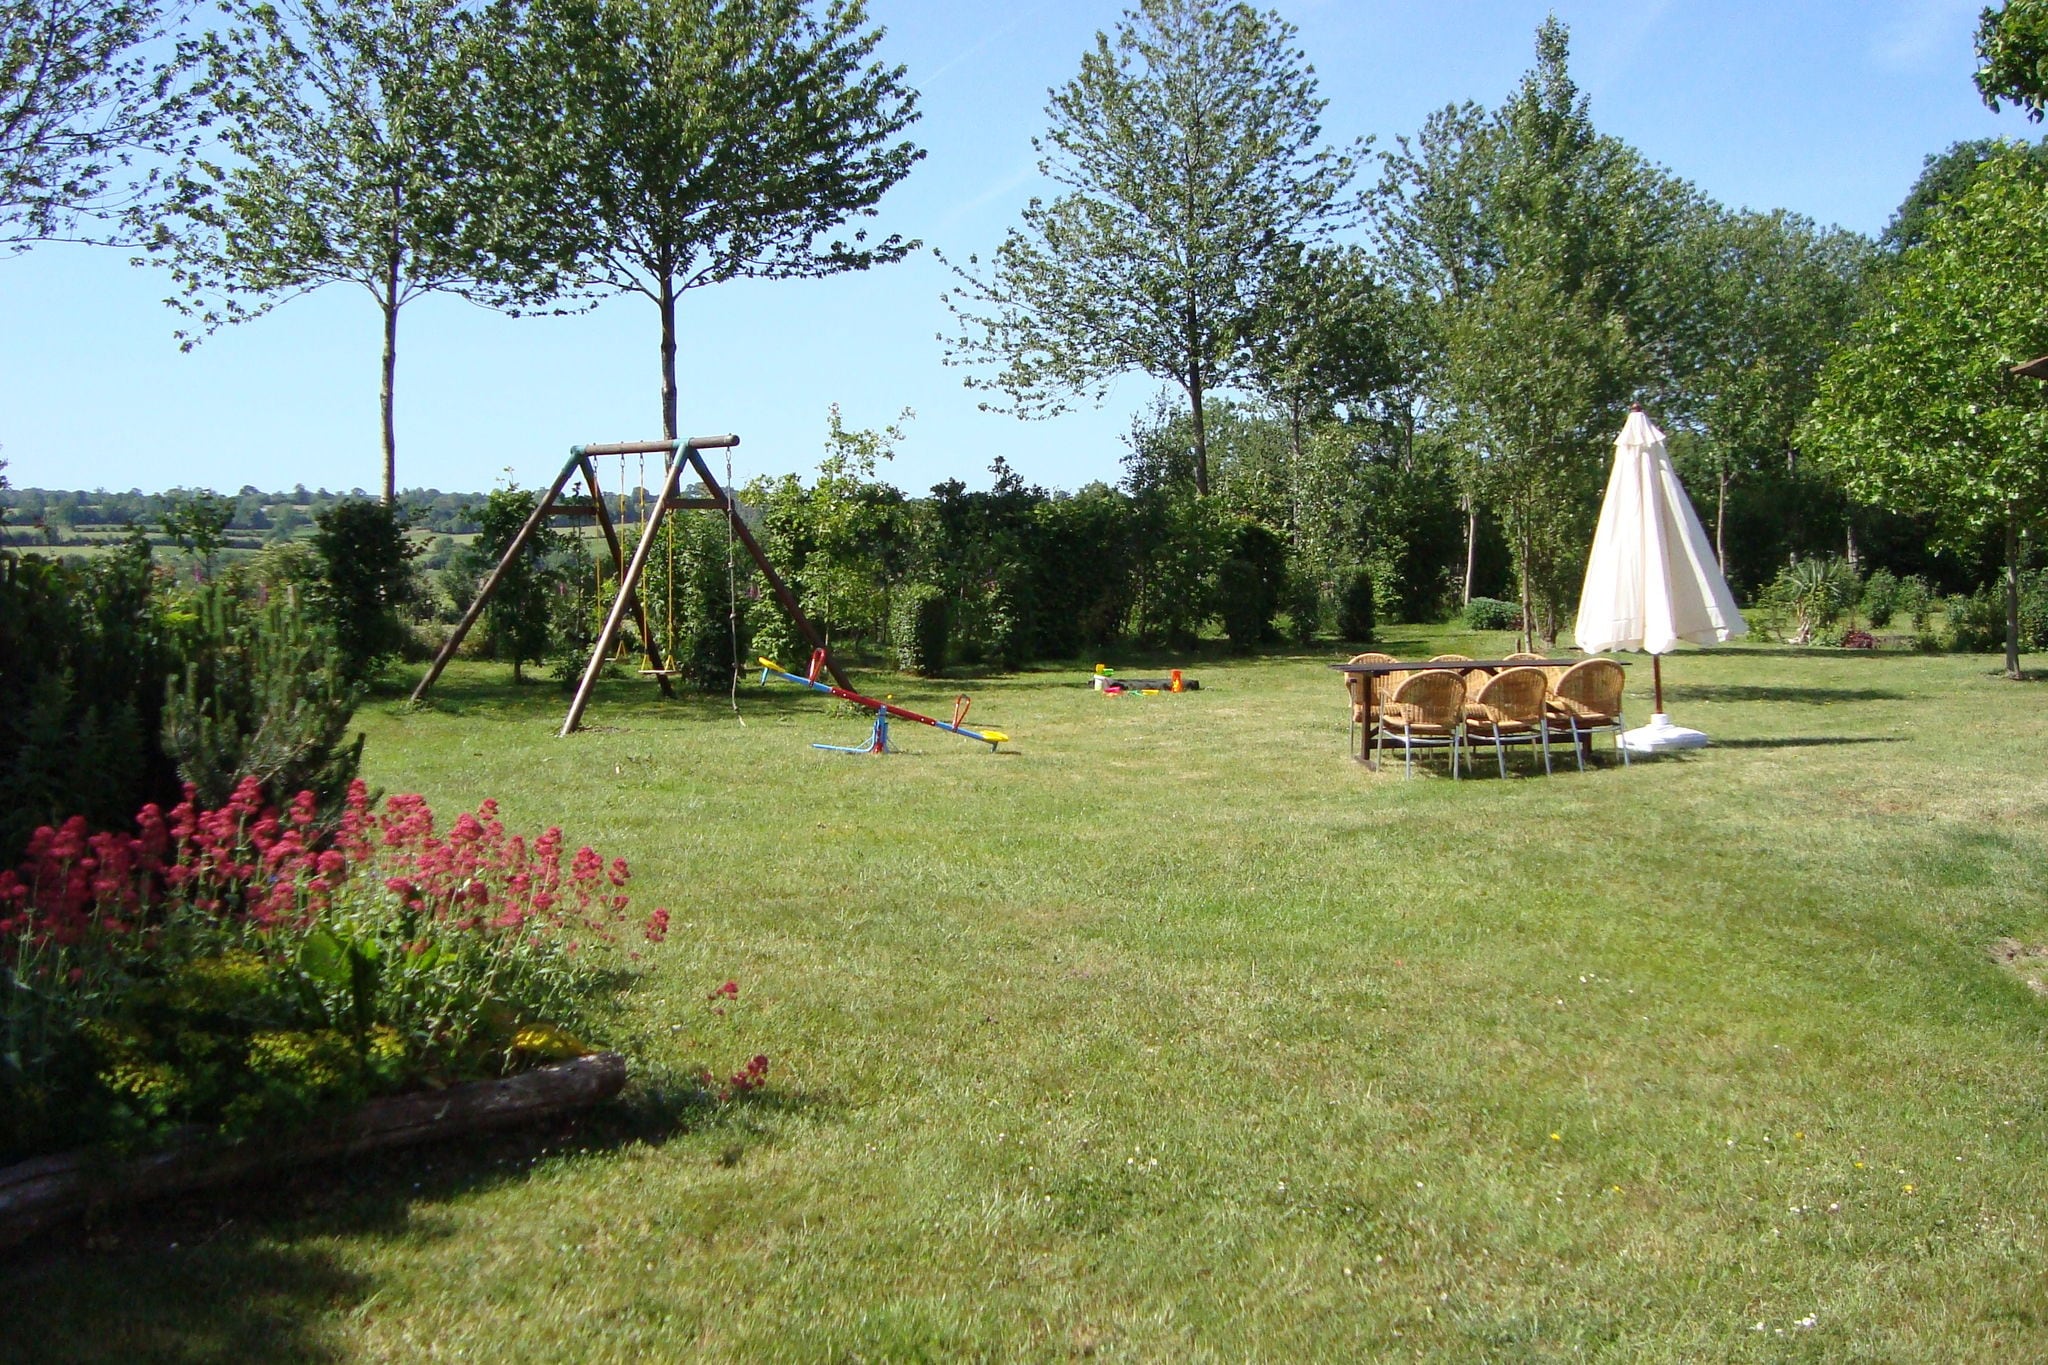 Maison de vacances rustique avec jardin en Normandie, France